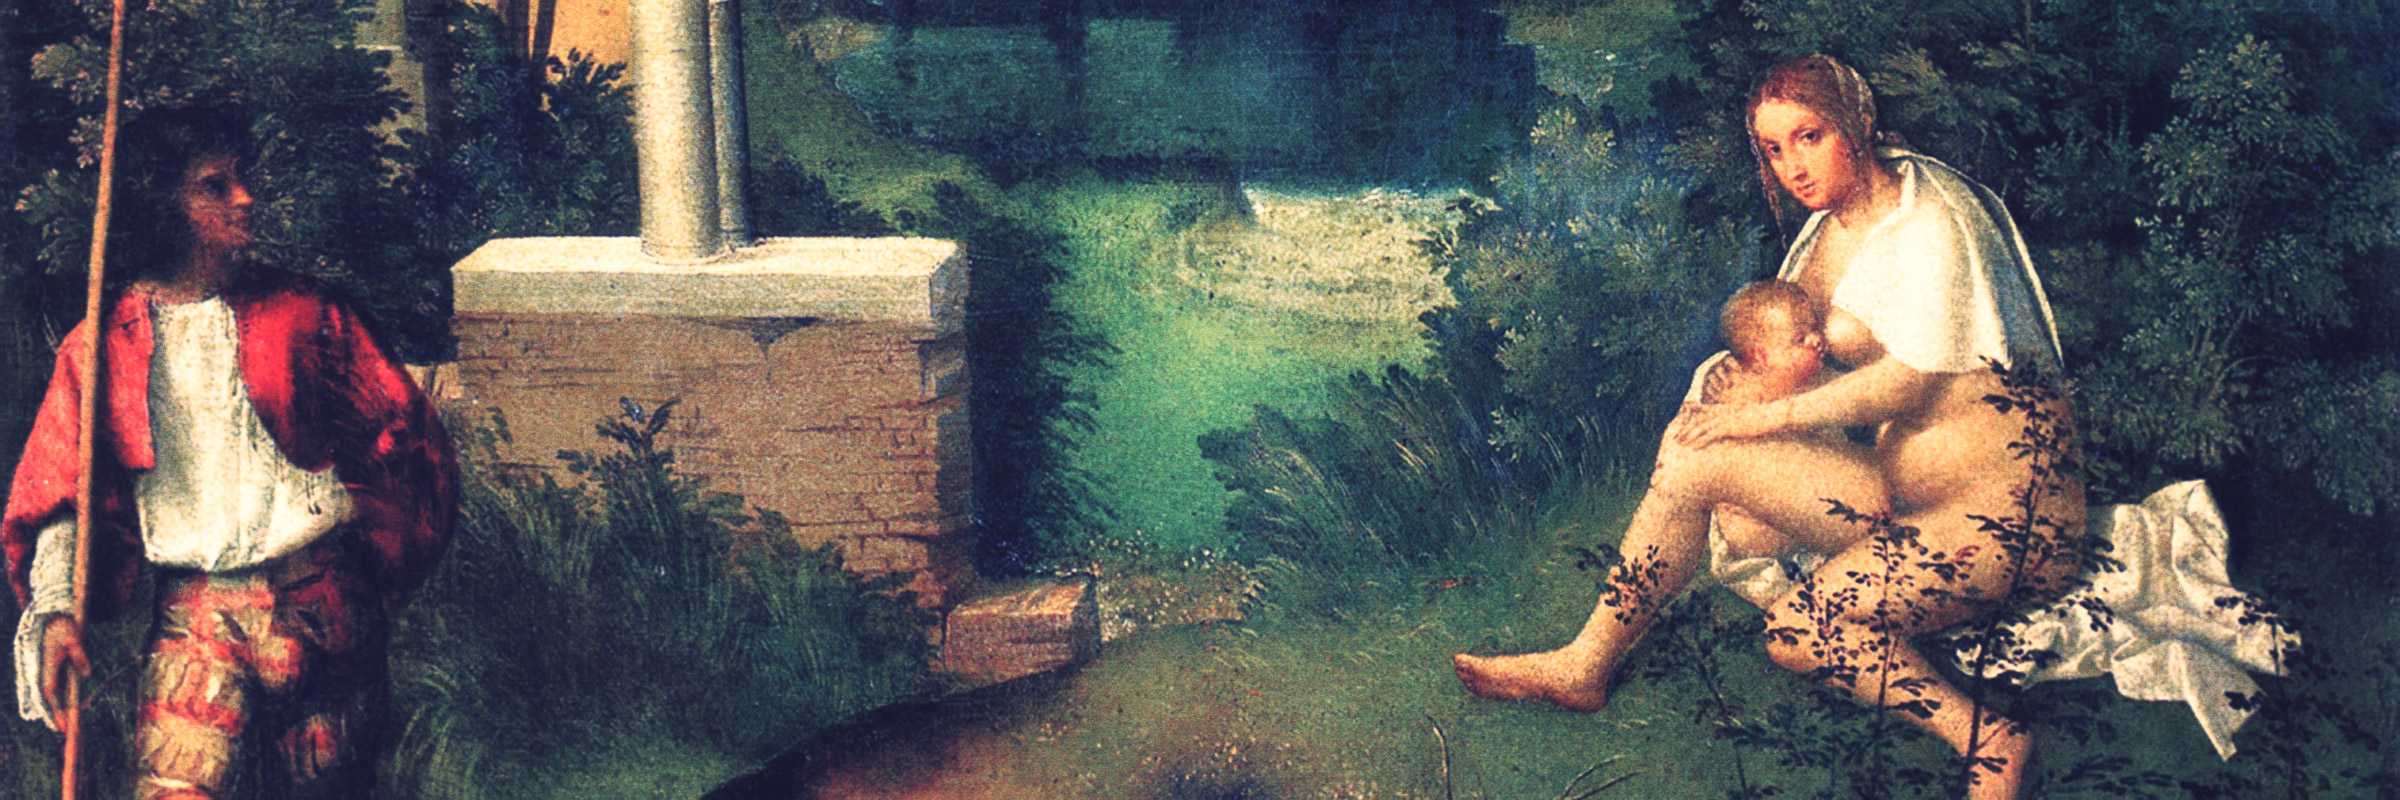 La Tempesta di Giorgione.